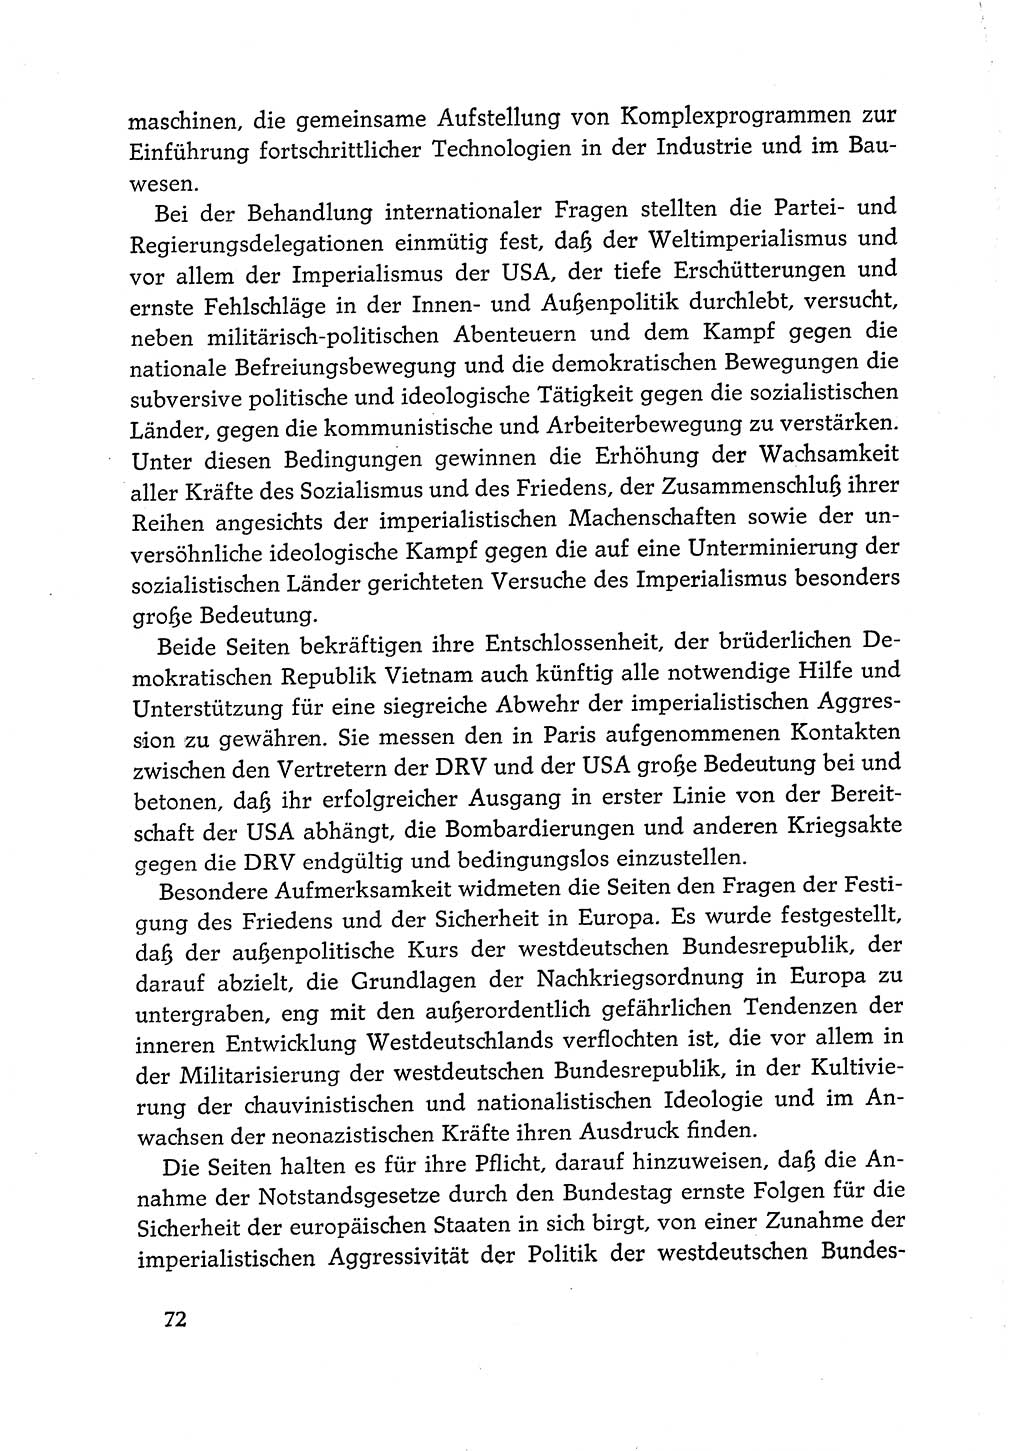 Dokumente der Sozialistischen Einheitspartei Deutschlands (SED) [Deutsche Demokratische Republik (DDR)] 1968-1969, Seite 72 (Dok. SED DDR 1968-1969, S. 72)